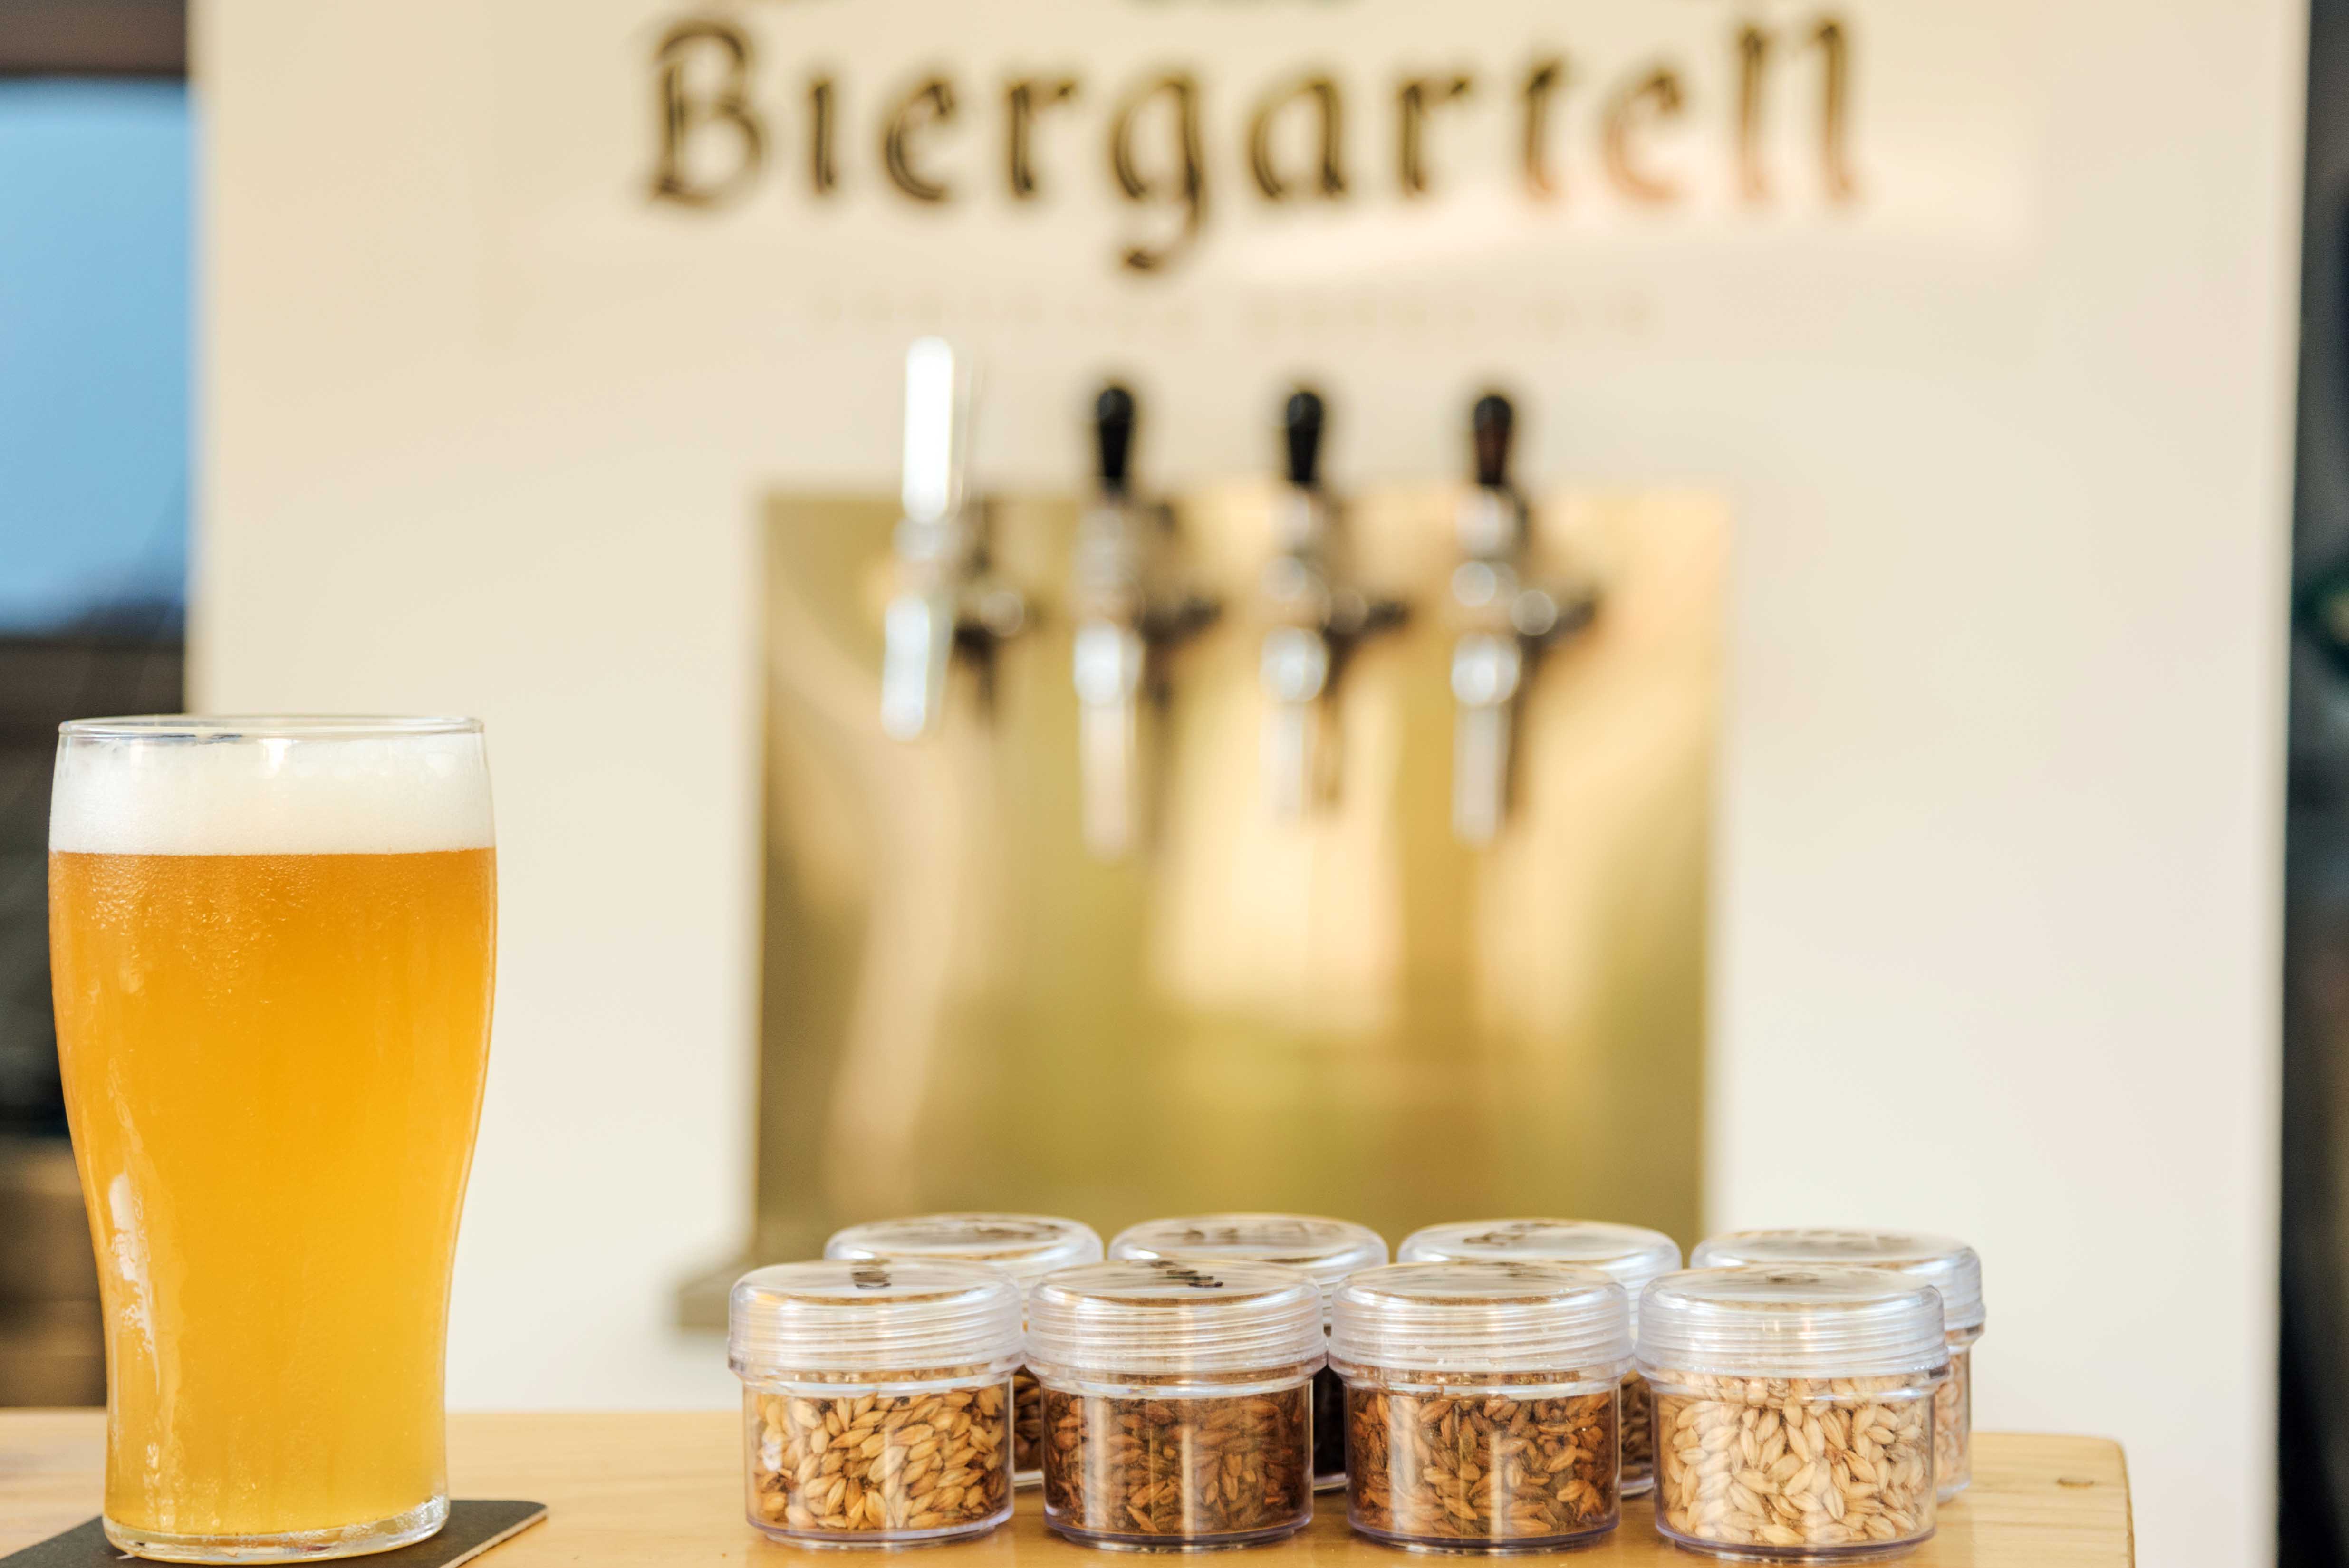 biergarten-beer-truck-food-park-barra-credito-daniel-planel